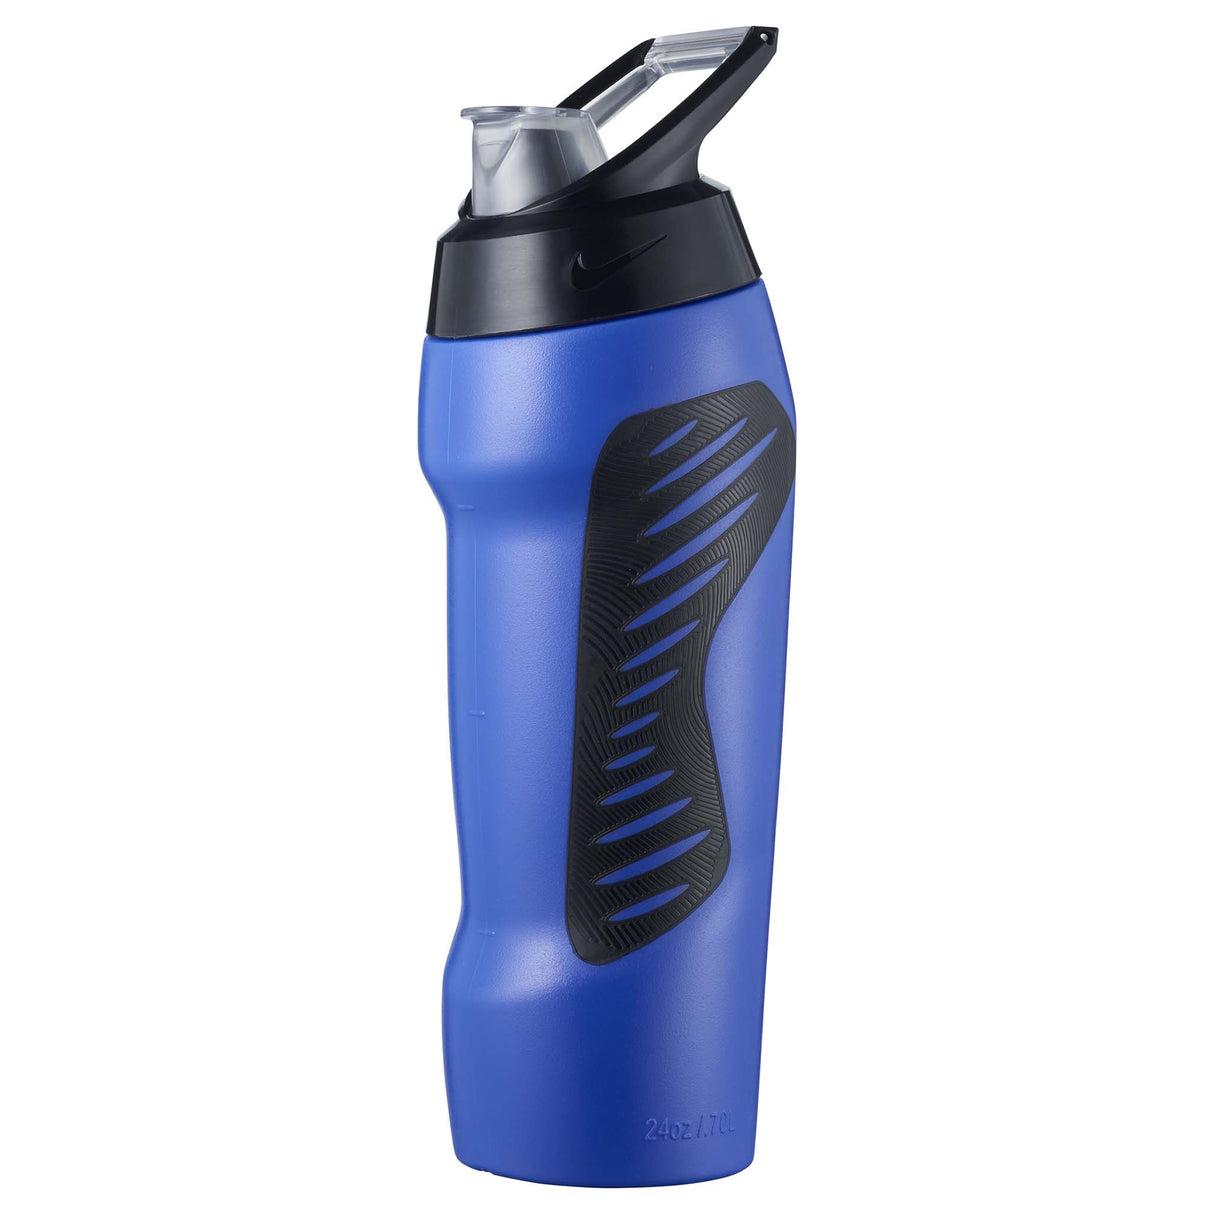 Nike Hyperfuel 2.0 24oz resealable sport water bottle